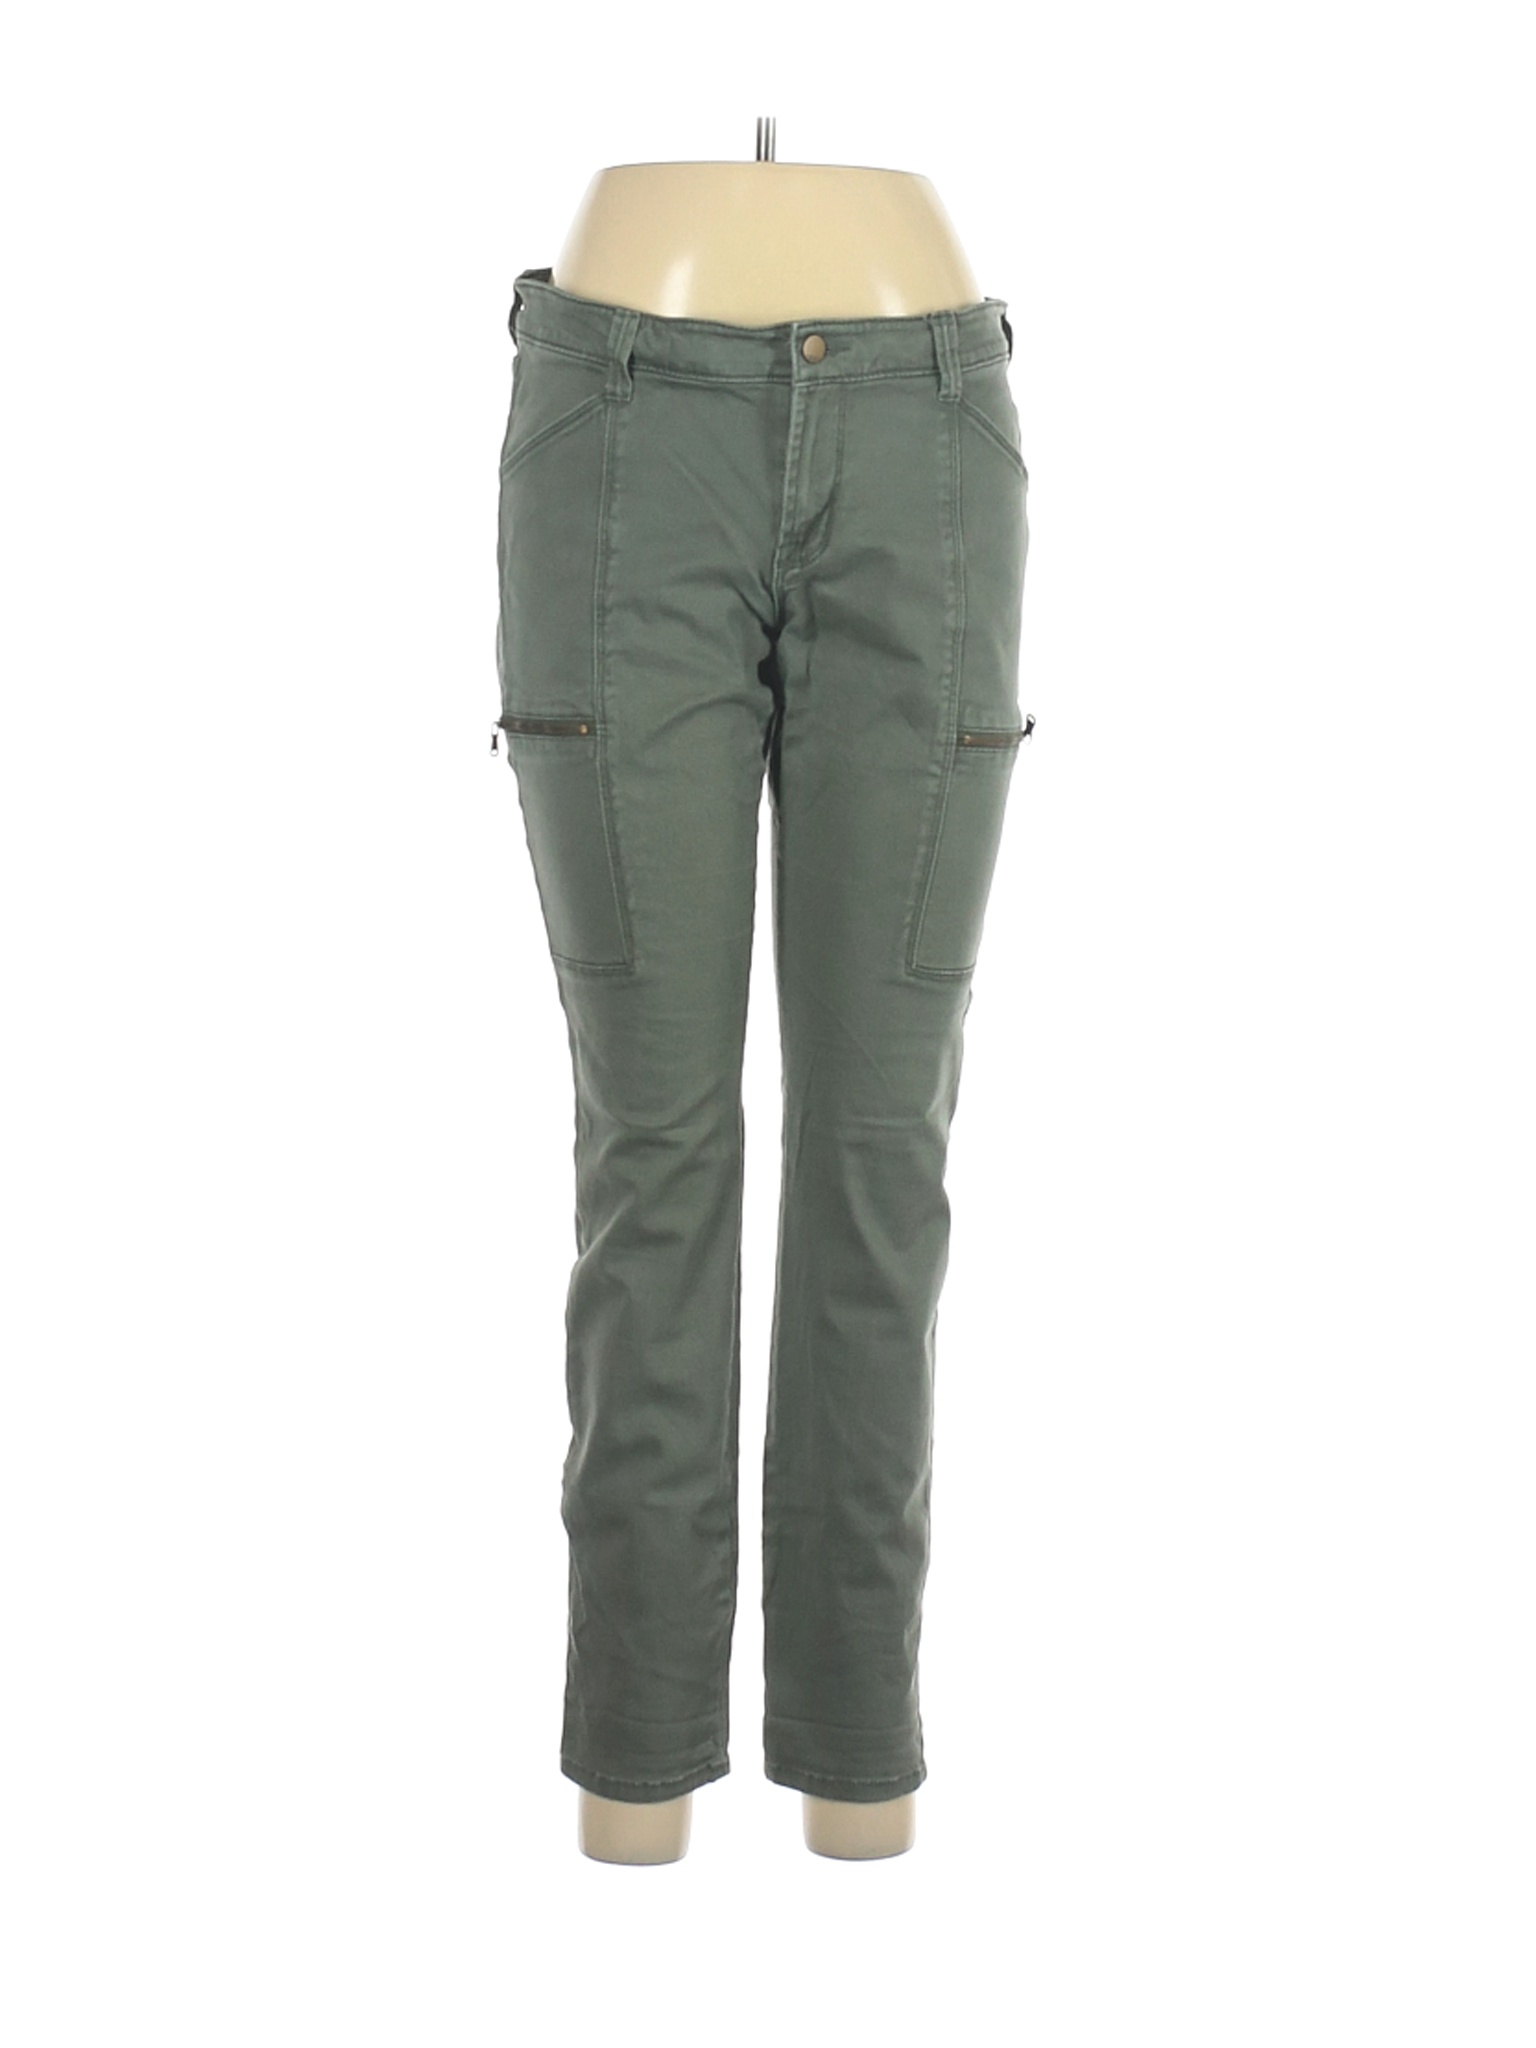 Gap Outlet Women Green Cargo Pants 8 | eBay